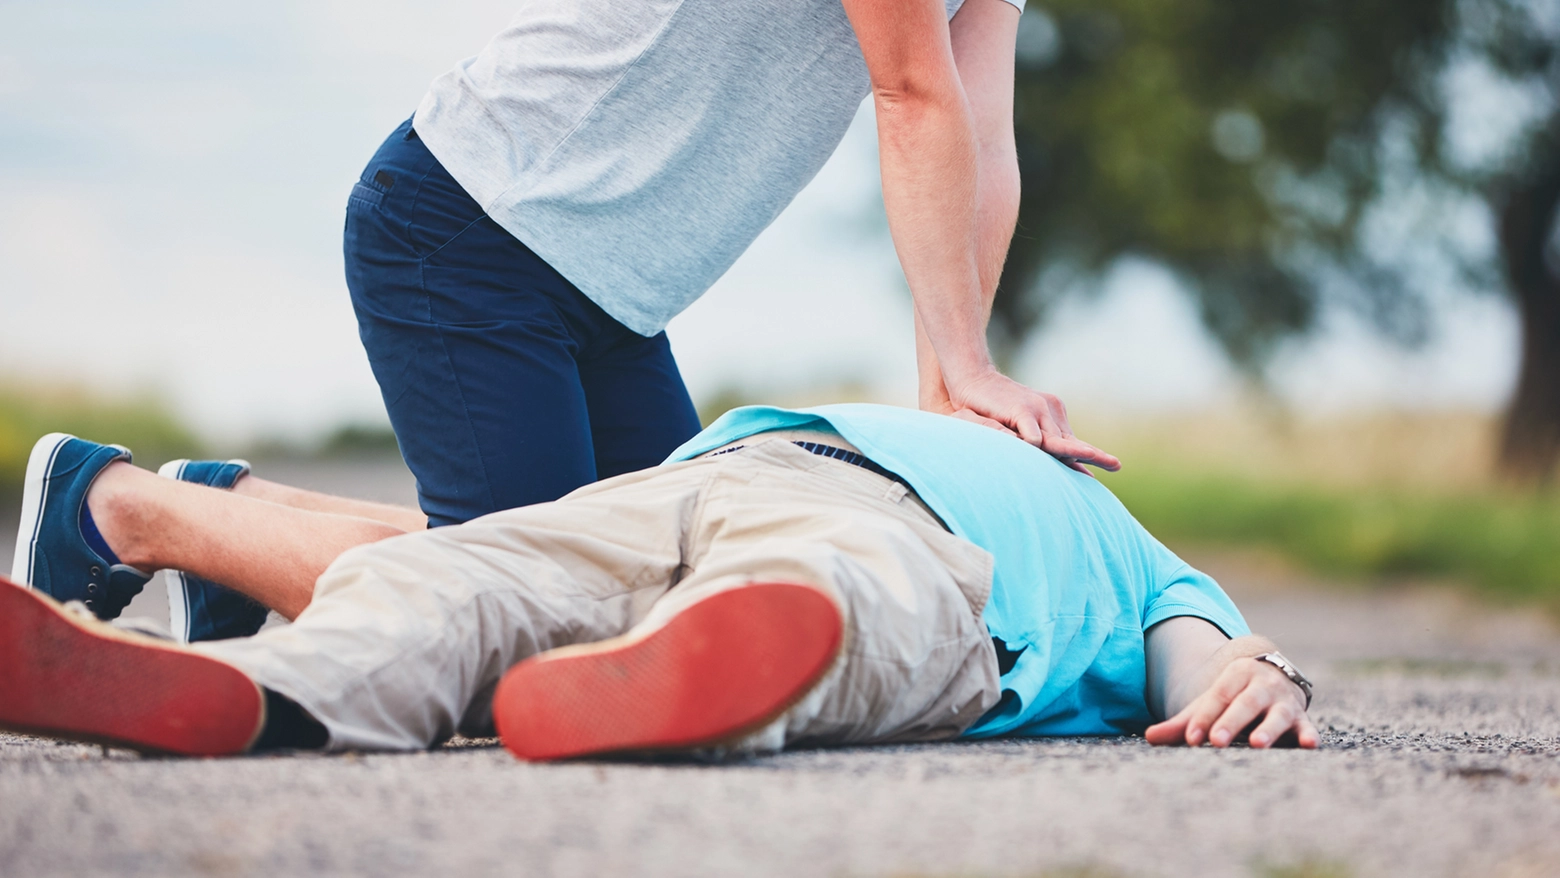 Due carabinieri fuori servizio salvano un uomo colto da malore in auto: gli praticano il massaggio cardiaco in strada